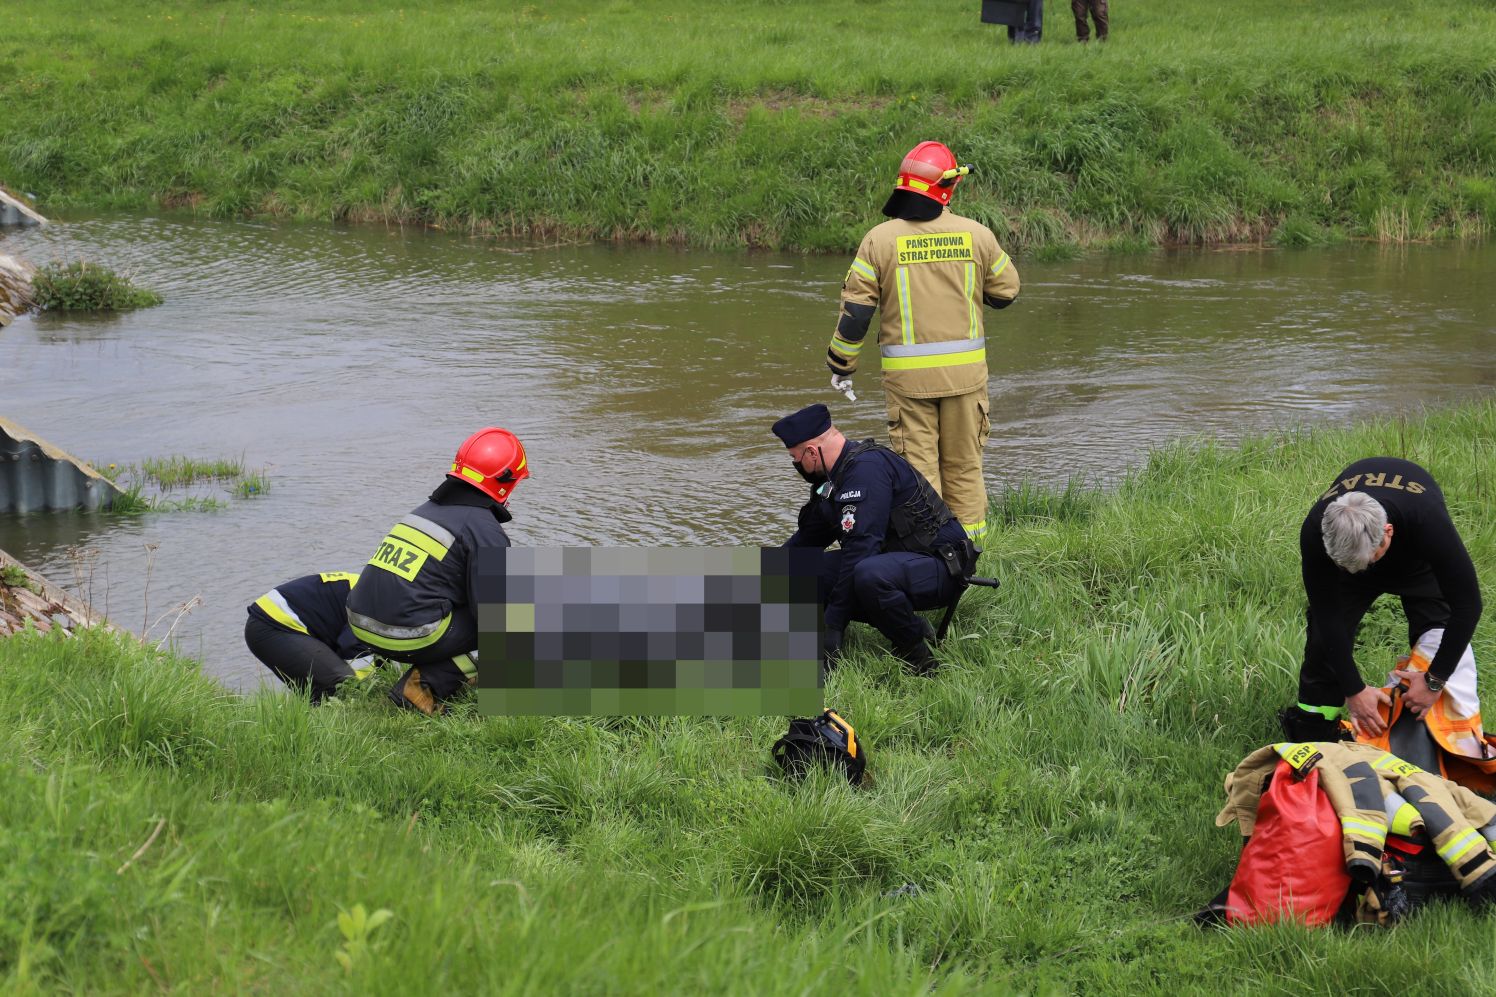 Z kutnowskiej rzeki wyłowiono ciało. Policja komentuje tragiczne odkrycie [ZDJĘCIA] - Zdjęcie główne